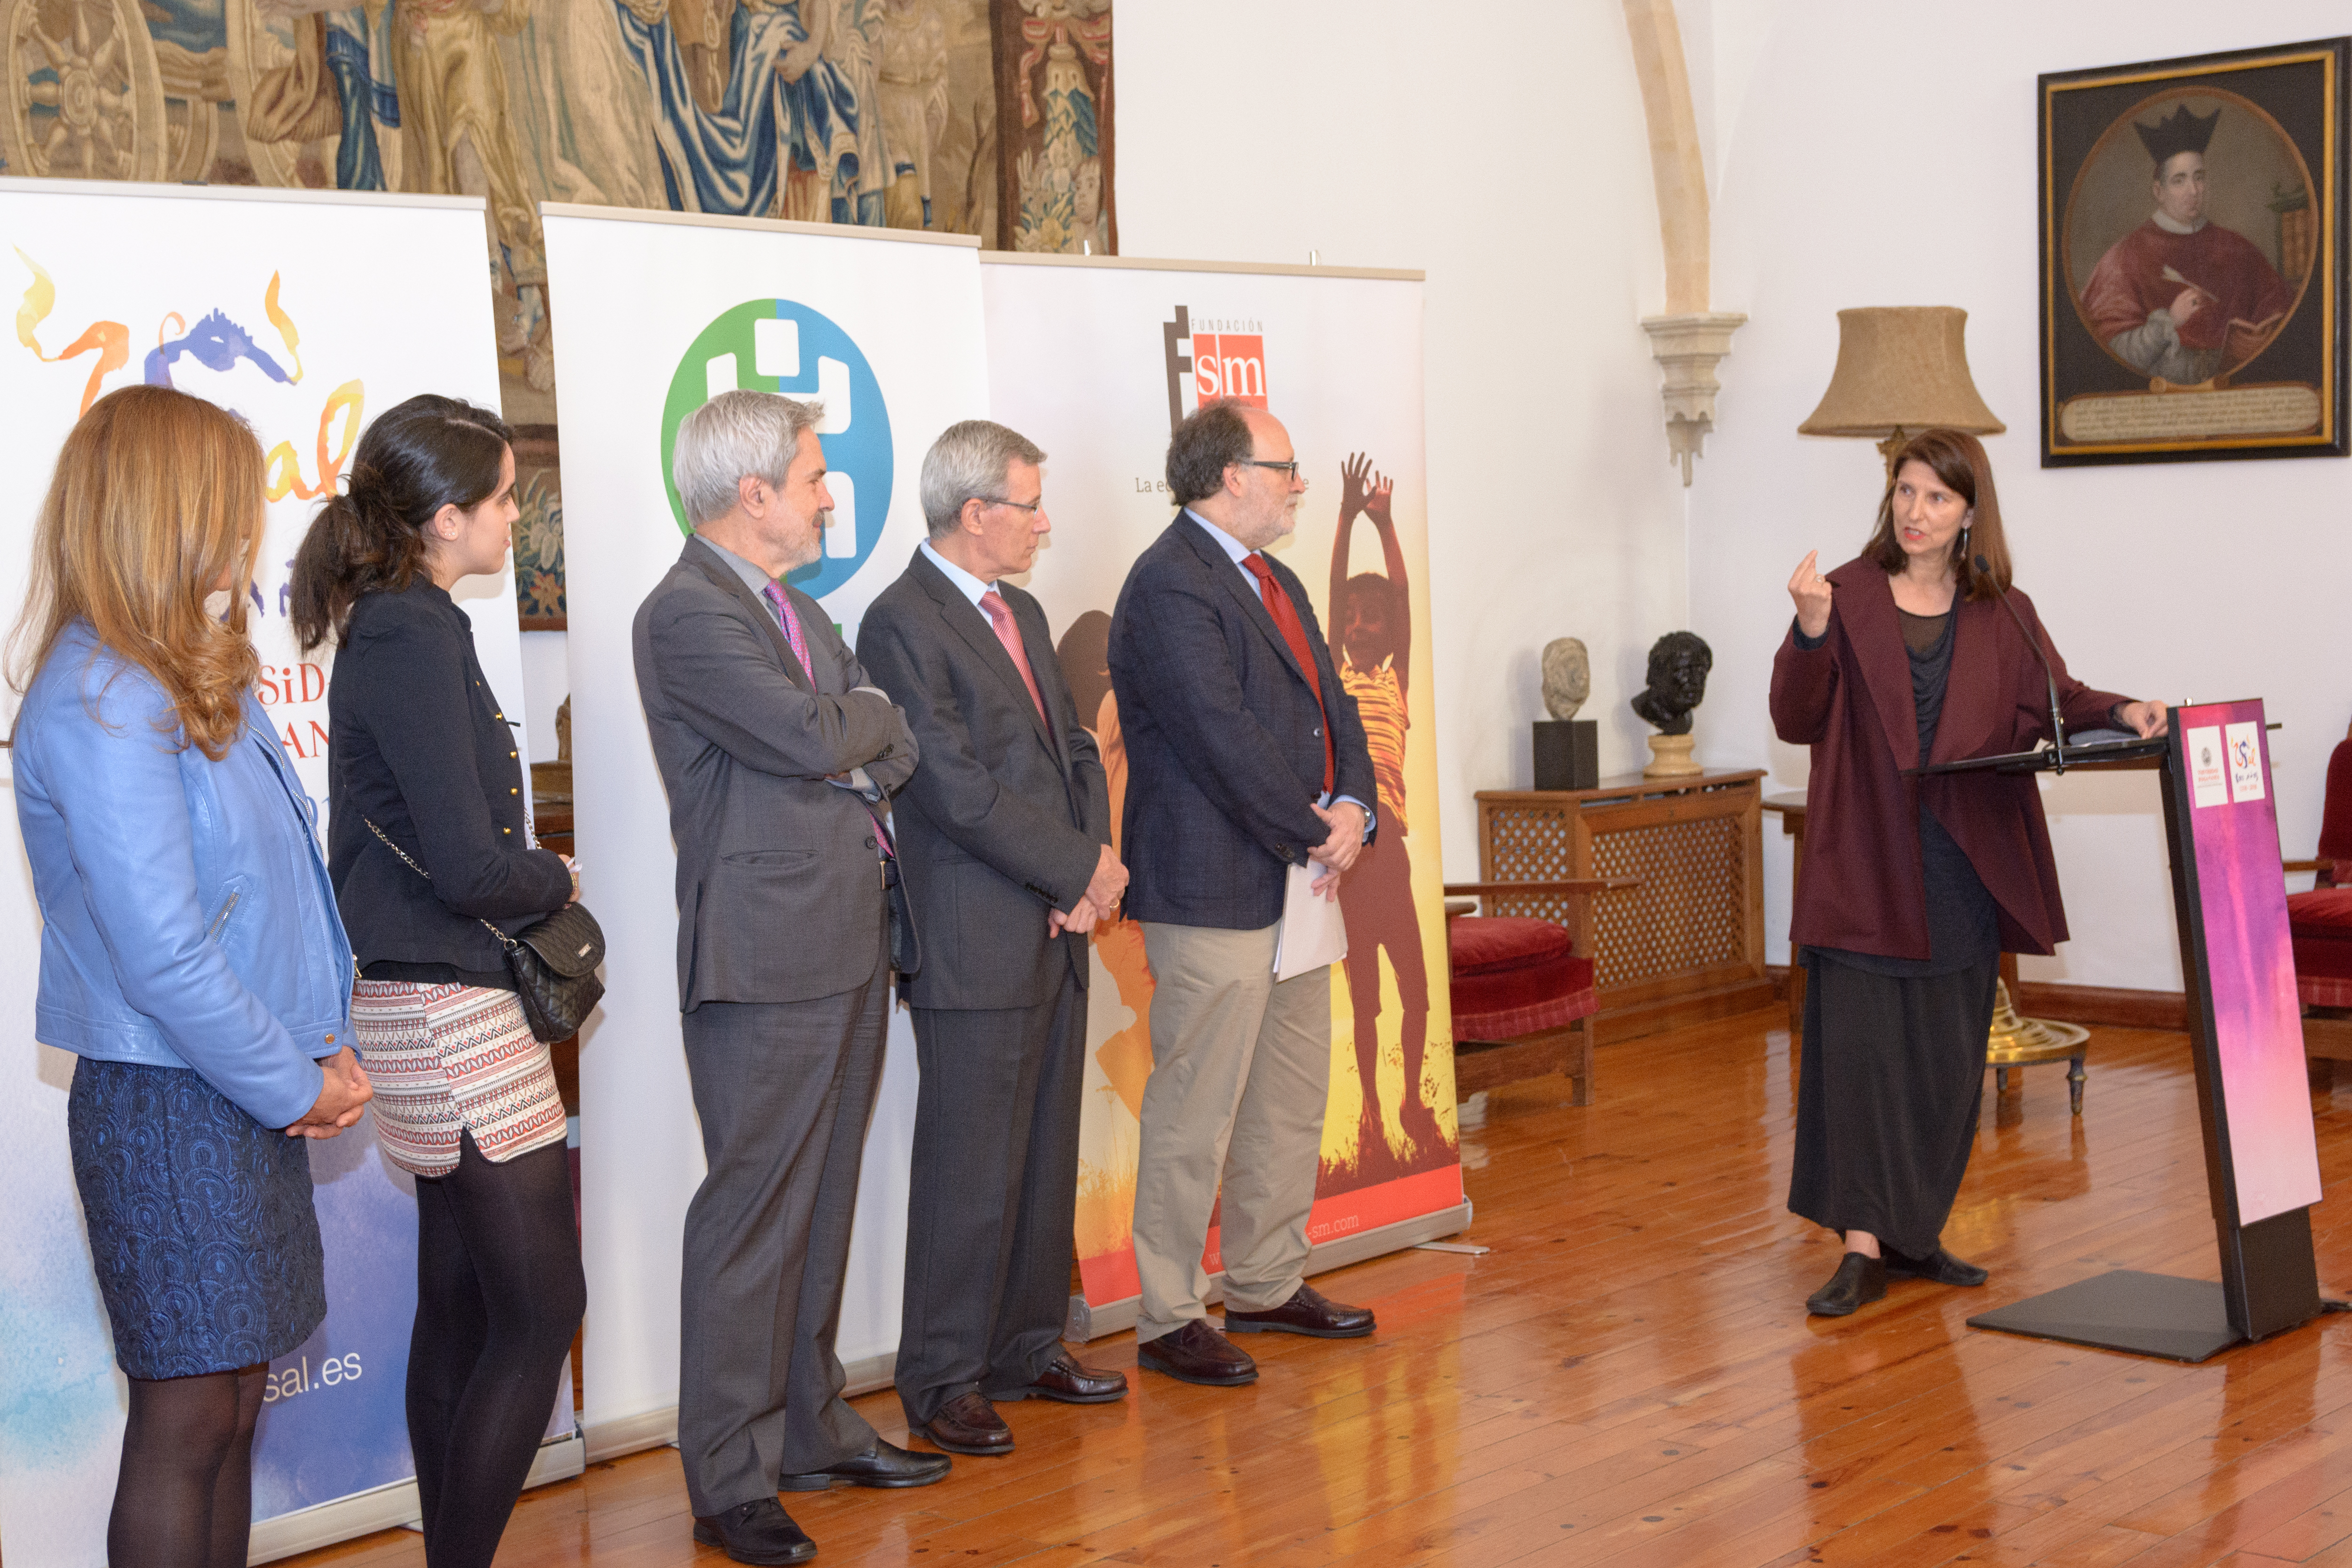 La Universidad de Salamanca acoge la entrega del premio a la ganadora española del concurso de Blogs ‘¿Qué estás leyendo?’